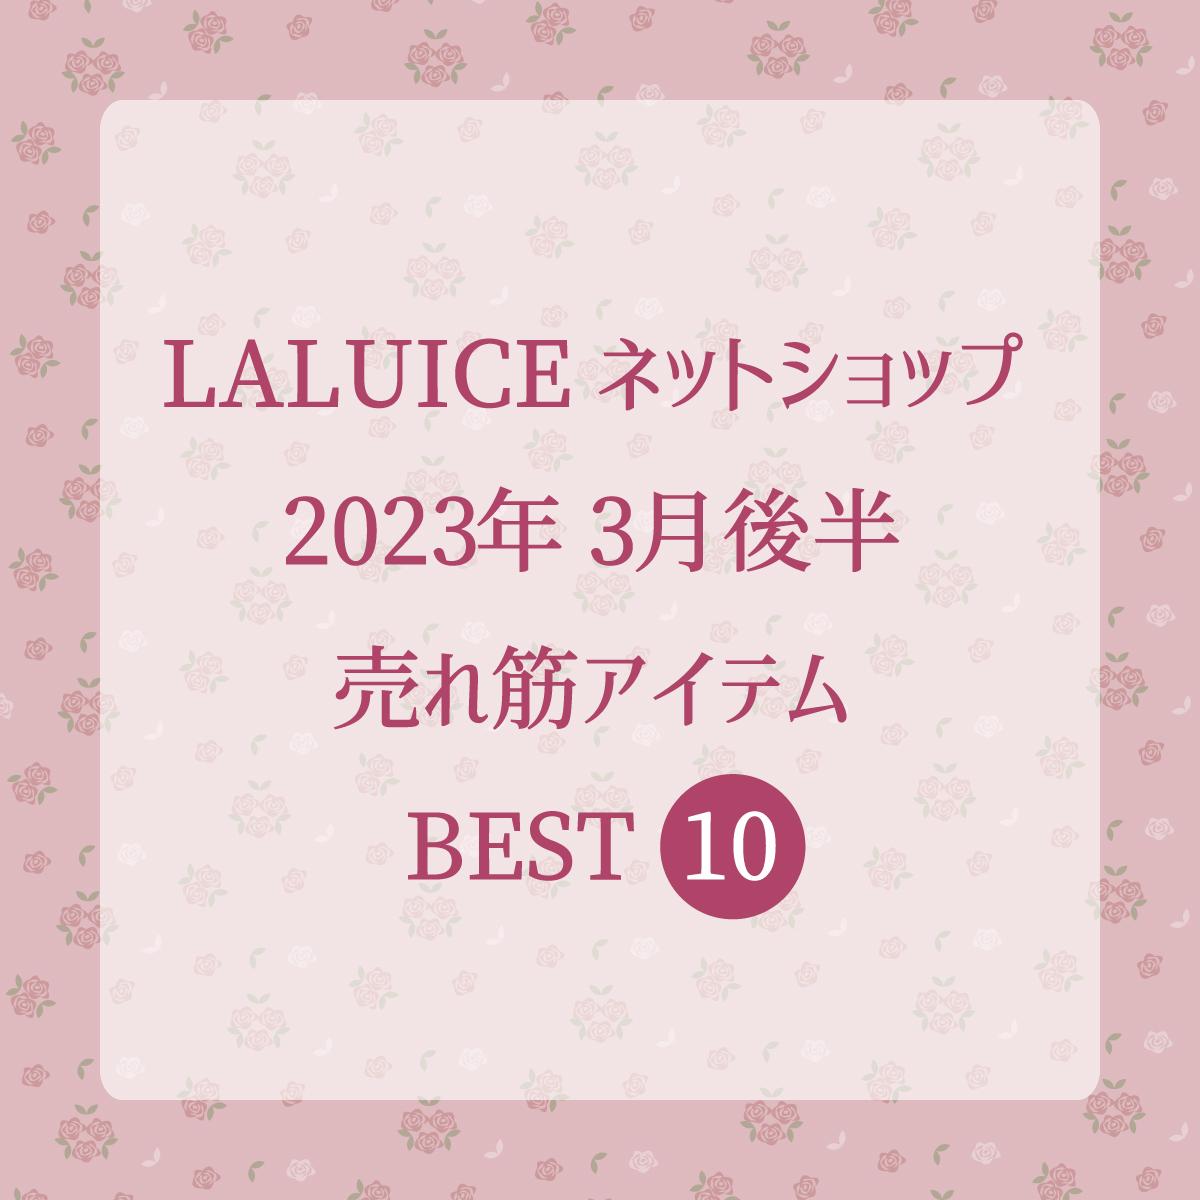 2023年3月後半(3/16～3/31)LALUICEネットショップ売れ筋アイテム BEST10